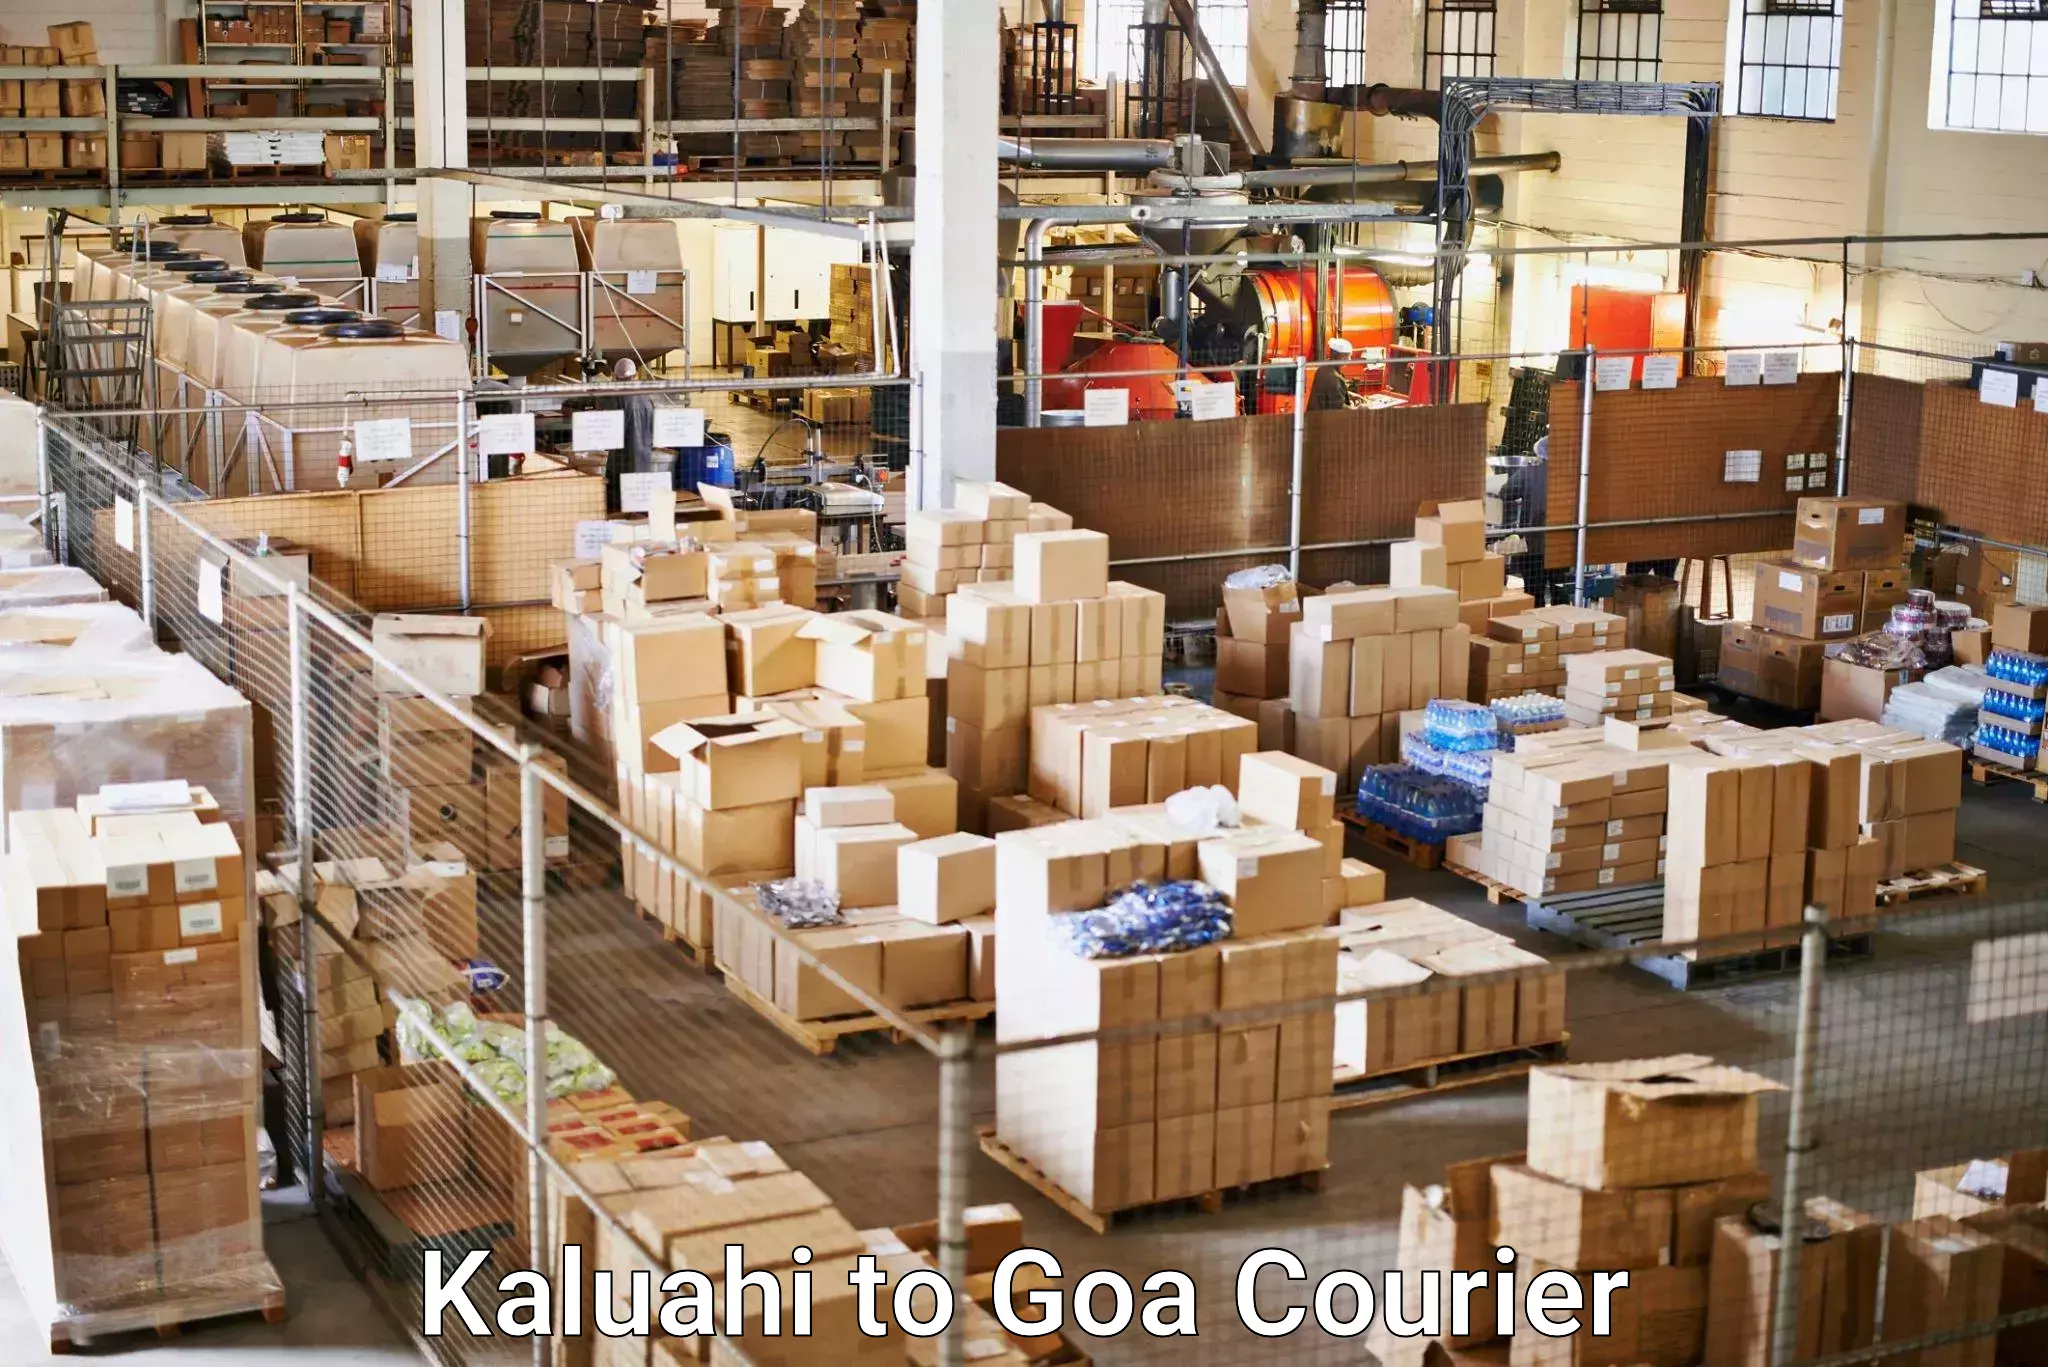 Seamless shipping experience Kaluahi to NIT Goa